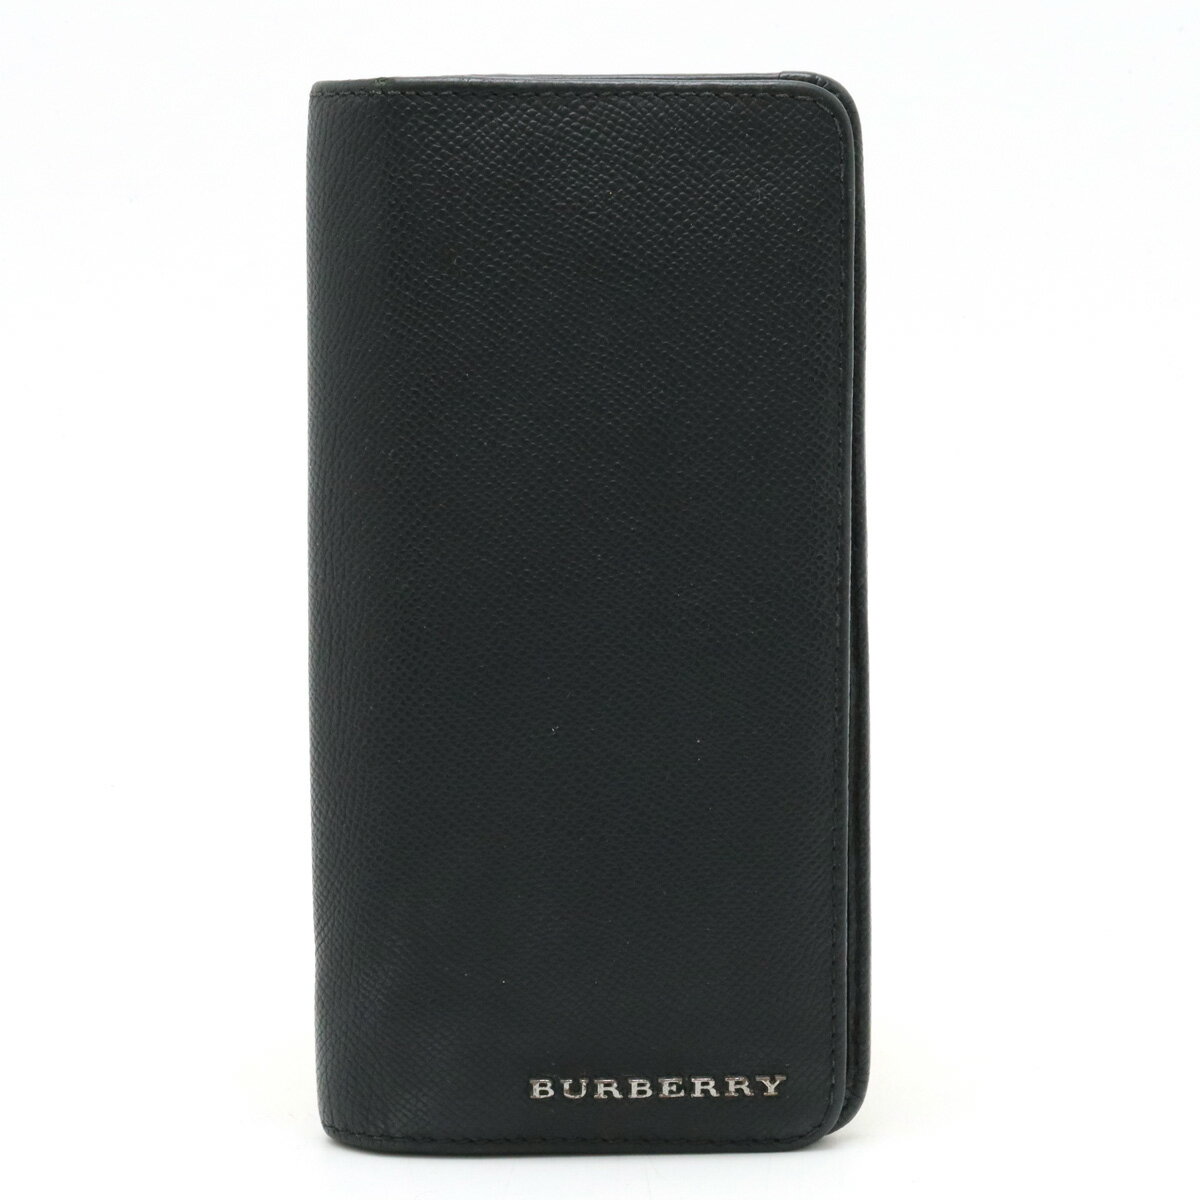 【財布】BURBERRY バーバリー 2つ折長財布 二つ折り長財布 レザー ブラック 黒 【中古】